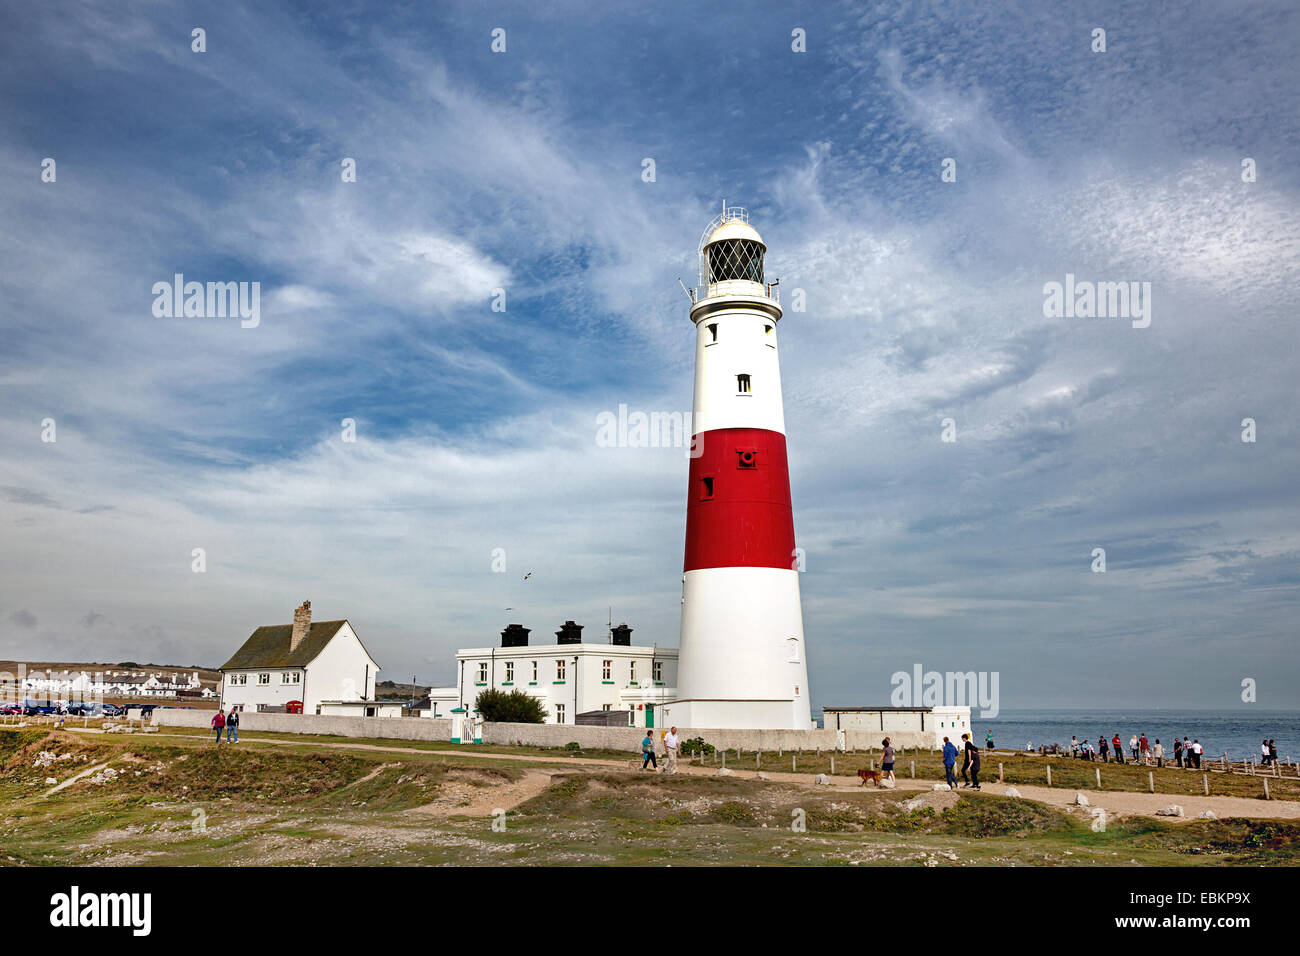 Portland Bill lighthouse, dans le Dorset, en Angleterre. Banque D'Images